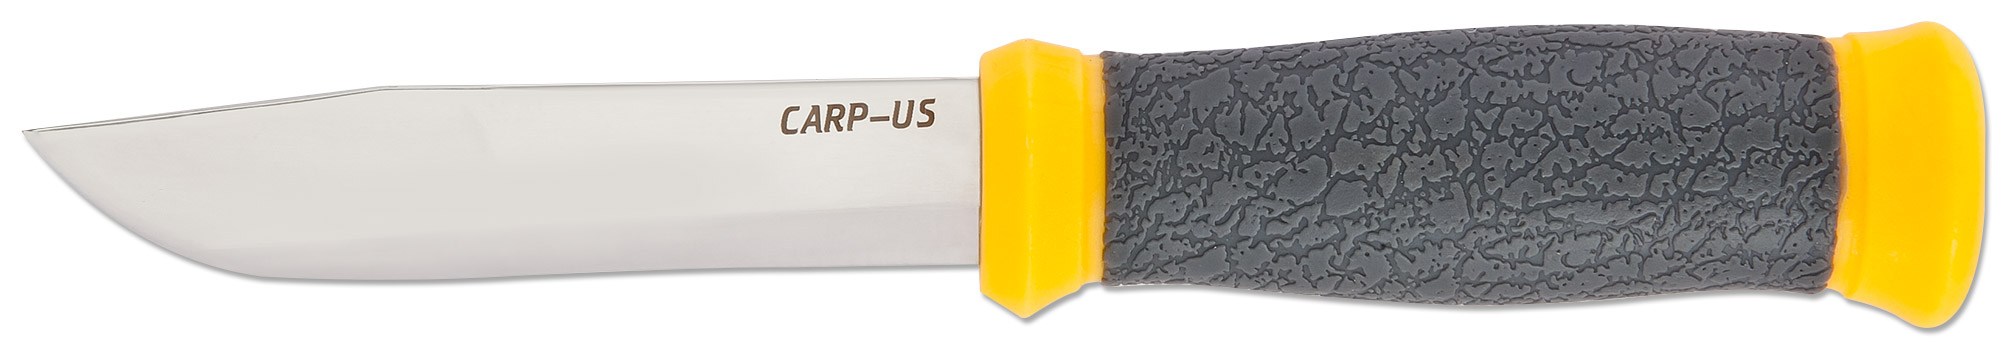 фото Туристический нож ножемир carp-us h-180 желтый/серебристый/серый